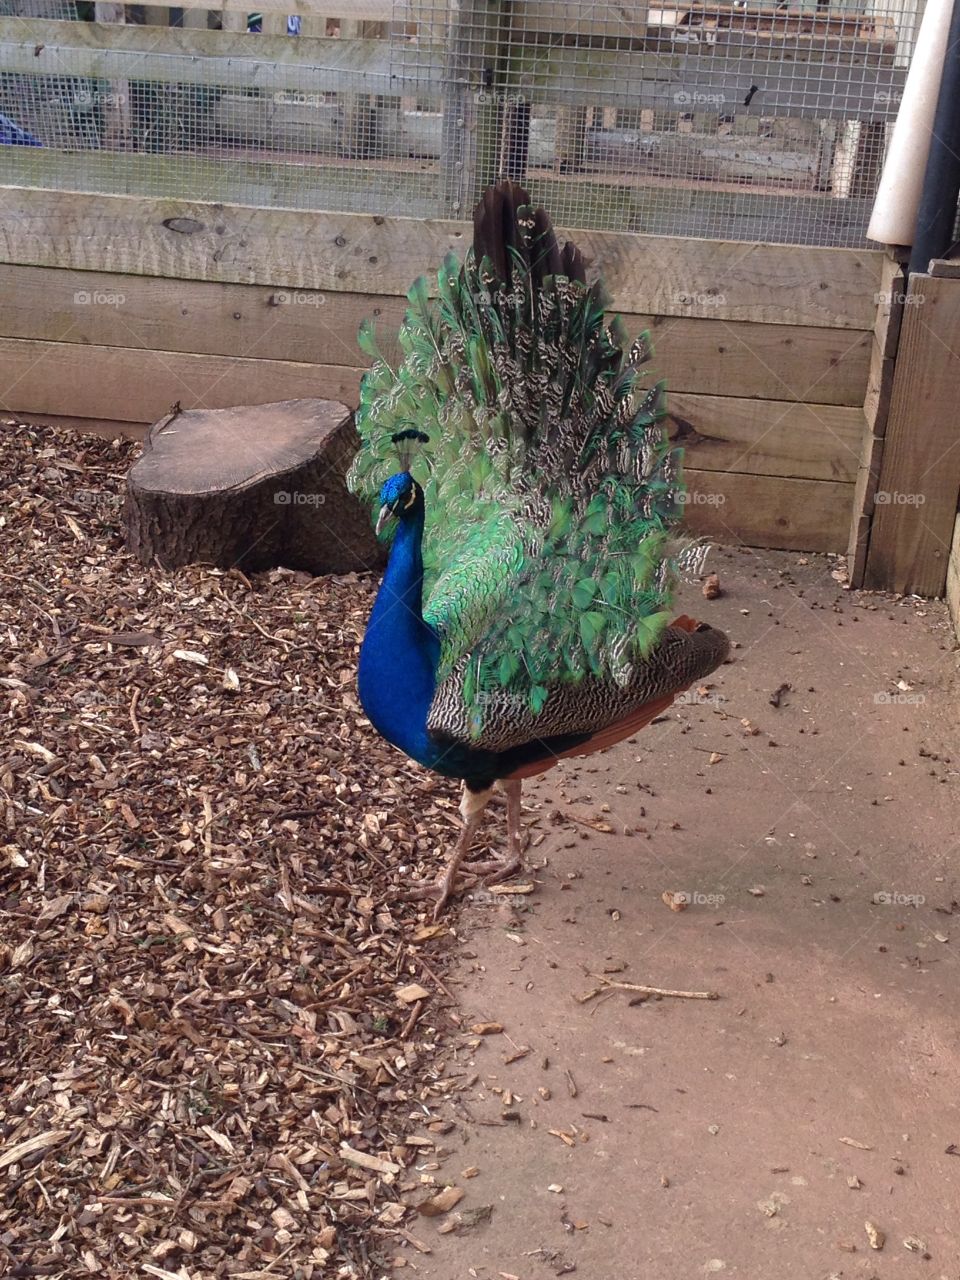 Bird, Peacock, Nature, Feather, Exhibition